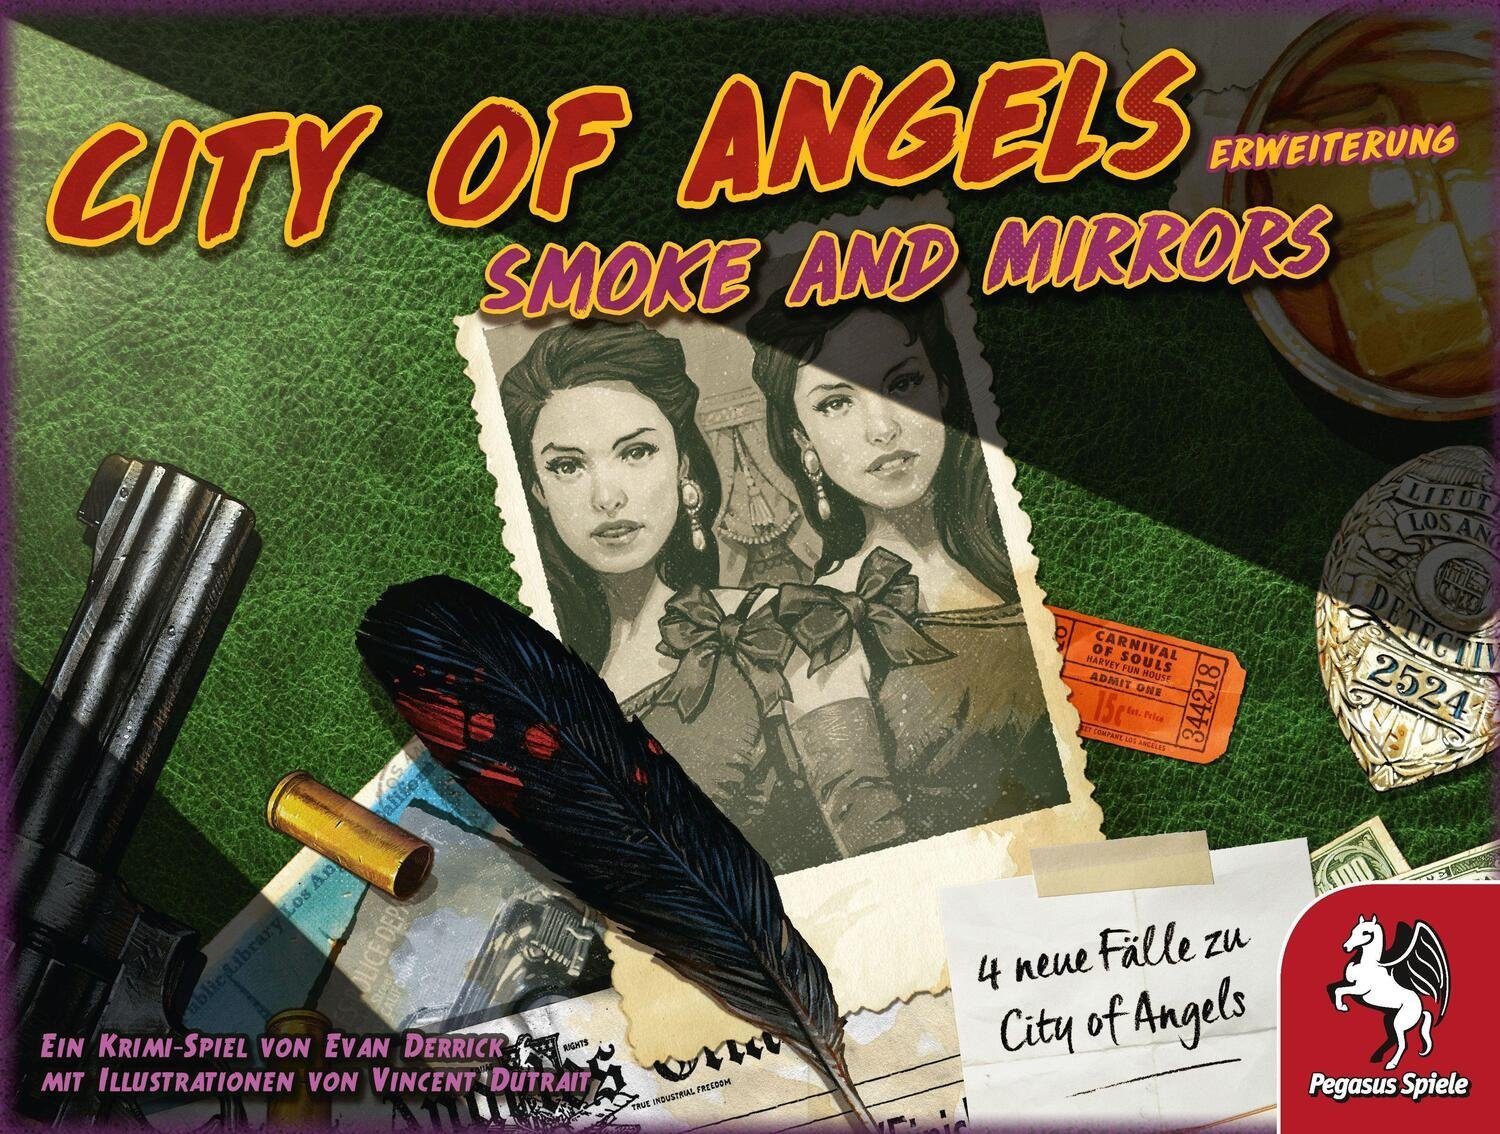 Spiel, [Erweiterung] Mirrors City Pegasus Spiele Smoke of Angels: and